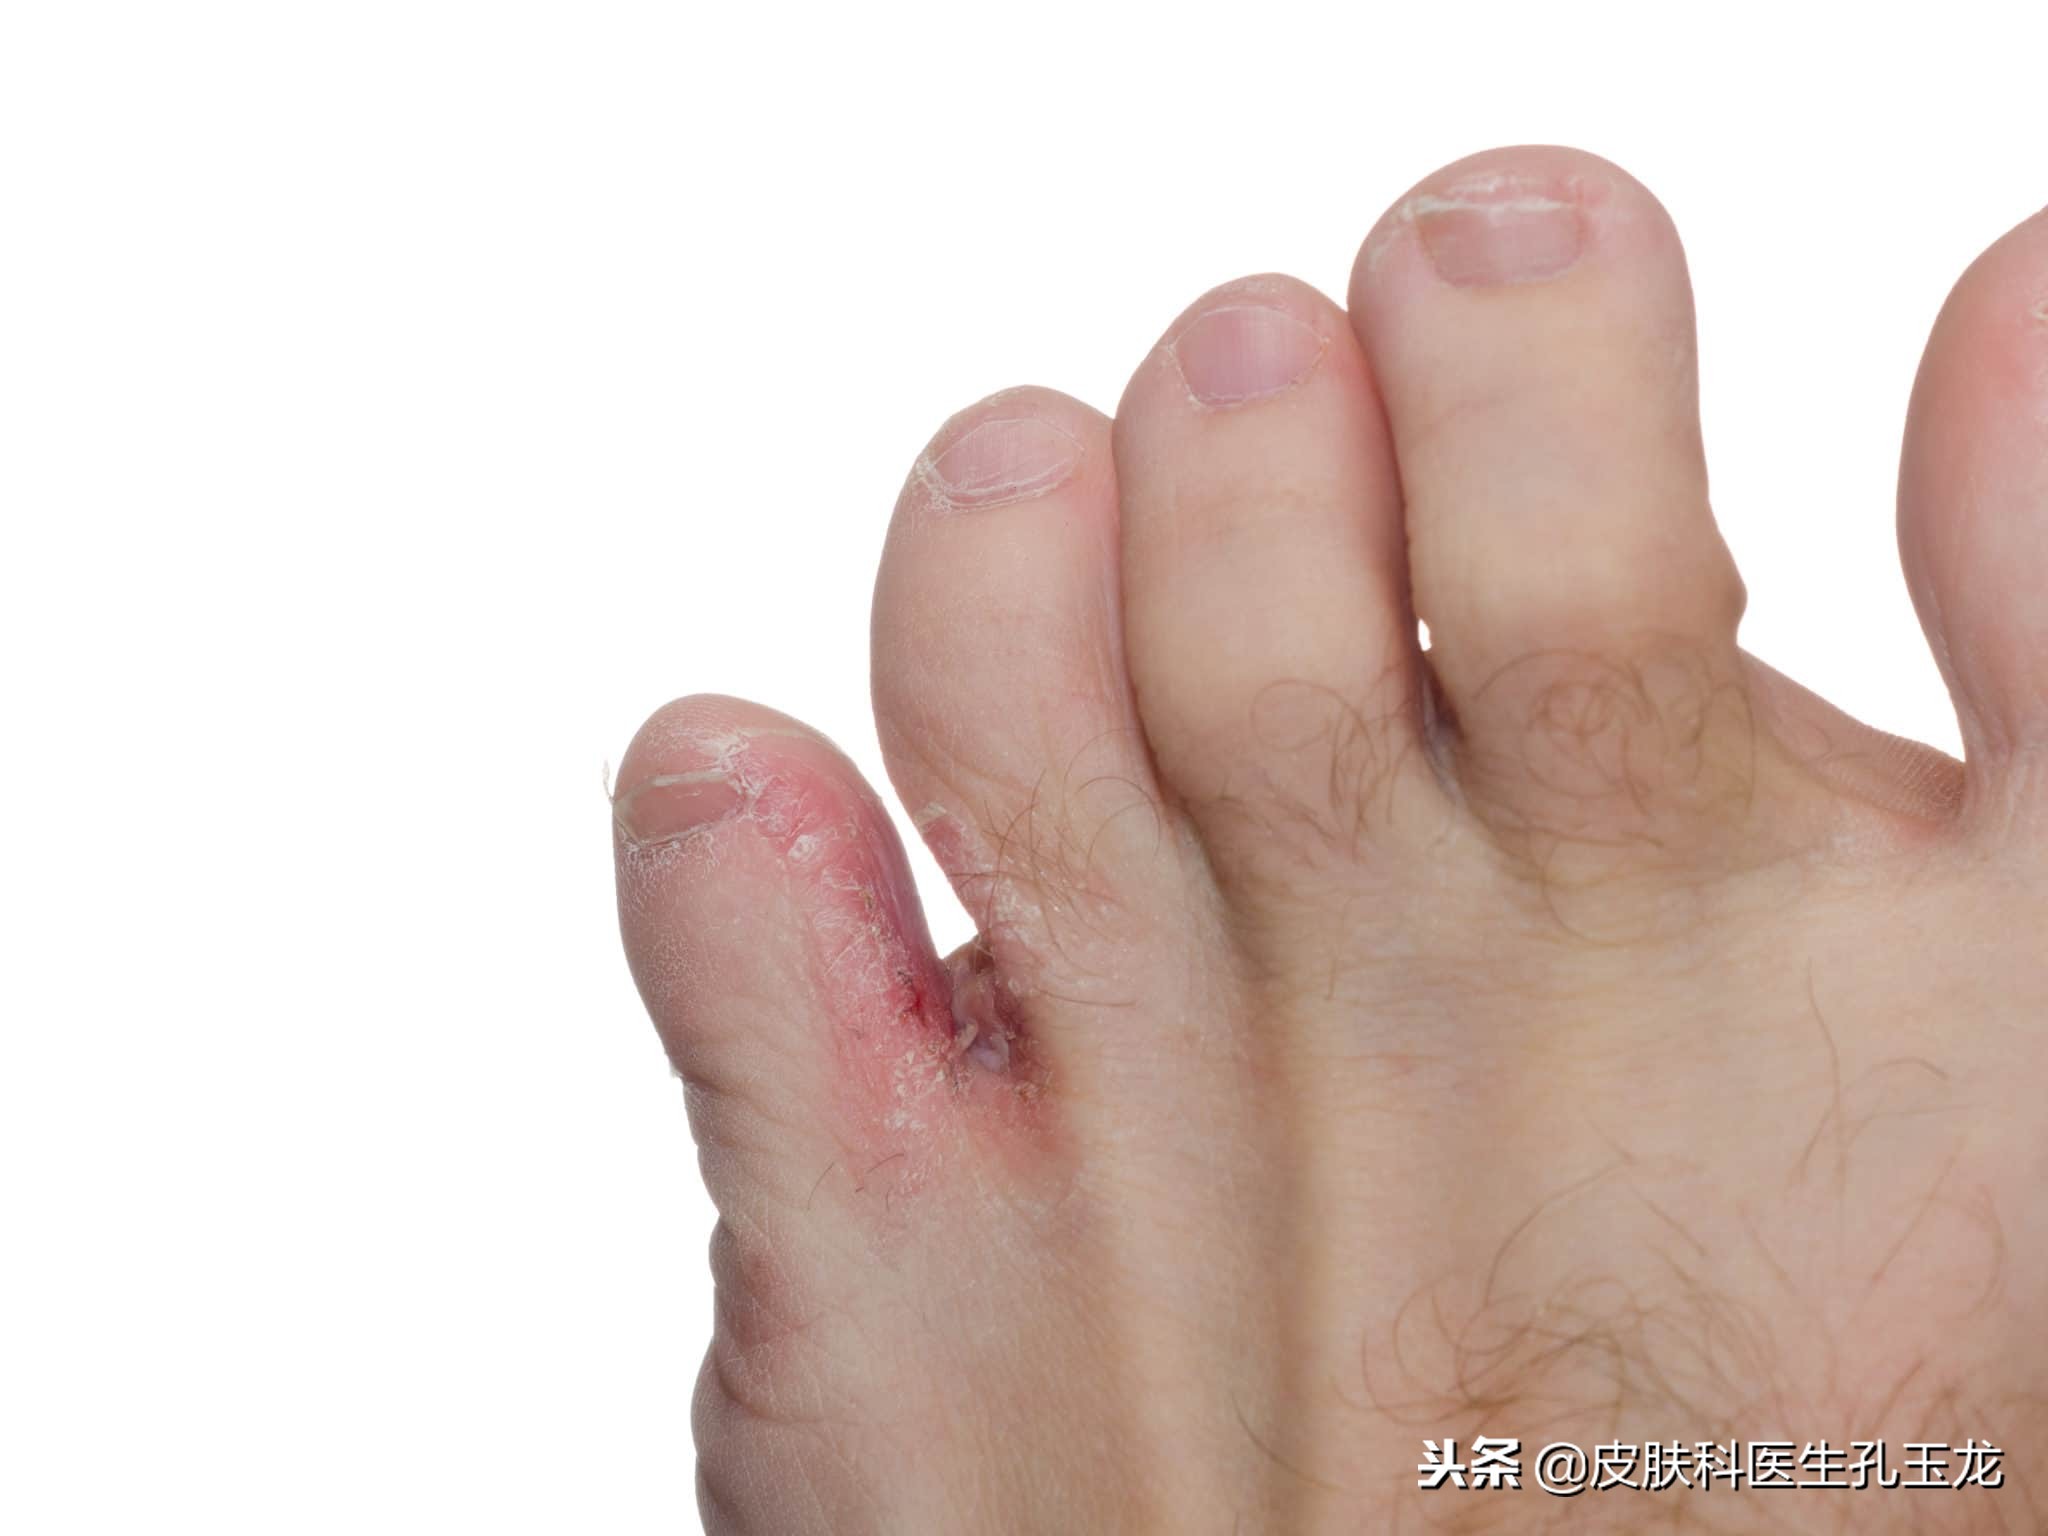 皮肤常见疾病系列:顽固的足癣,脚气,香港脚